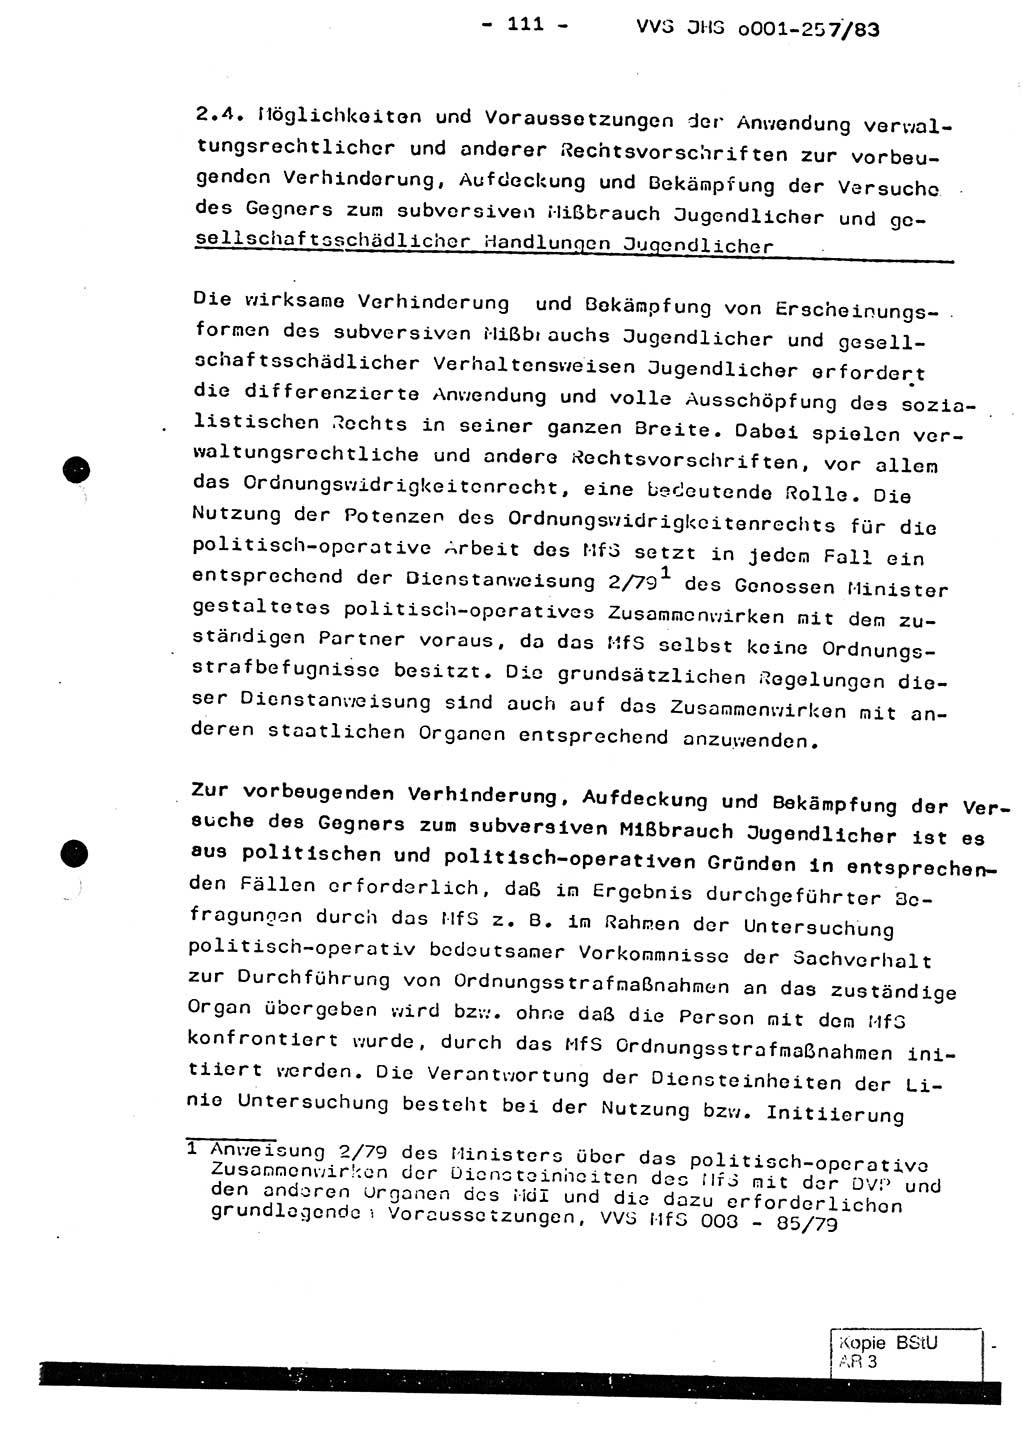 Dissertation, Oberst Helmut Lubas (BV Mdg.), Oberstleutnant Manfred Eschberger (HA IX), Oberleutnant Hans-Jürgen Ludwig (JHS), Ministerium für Staatssicherheit (MfS) [Deutsche Demokratische Republik (DDR)], Juristische Hochschule (JHS), Vertrauliche Verschlußsache (VVS) o001-257/83, Potsdam 1983, Seite 111 (Diss. MfS DDR JHS VVS o001-257/83 1983, S. 111)